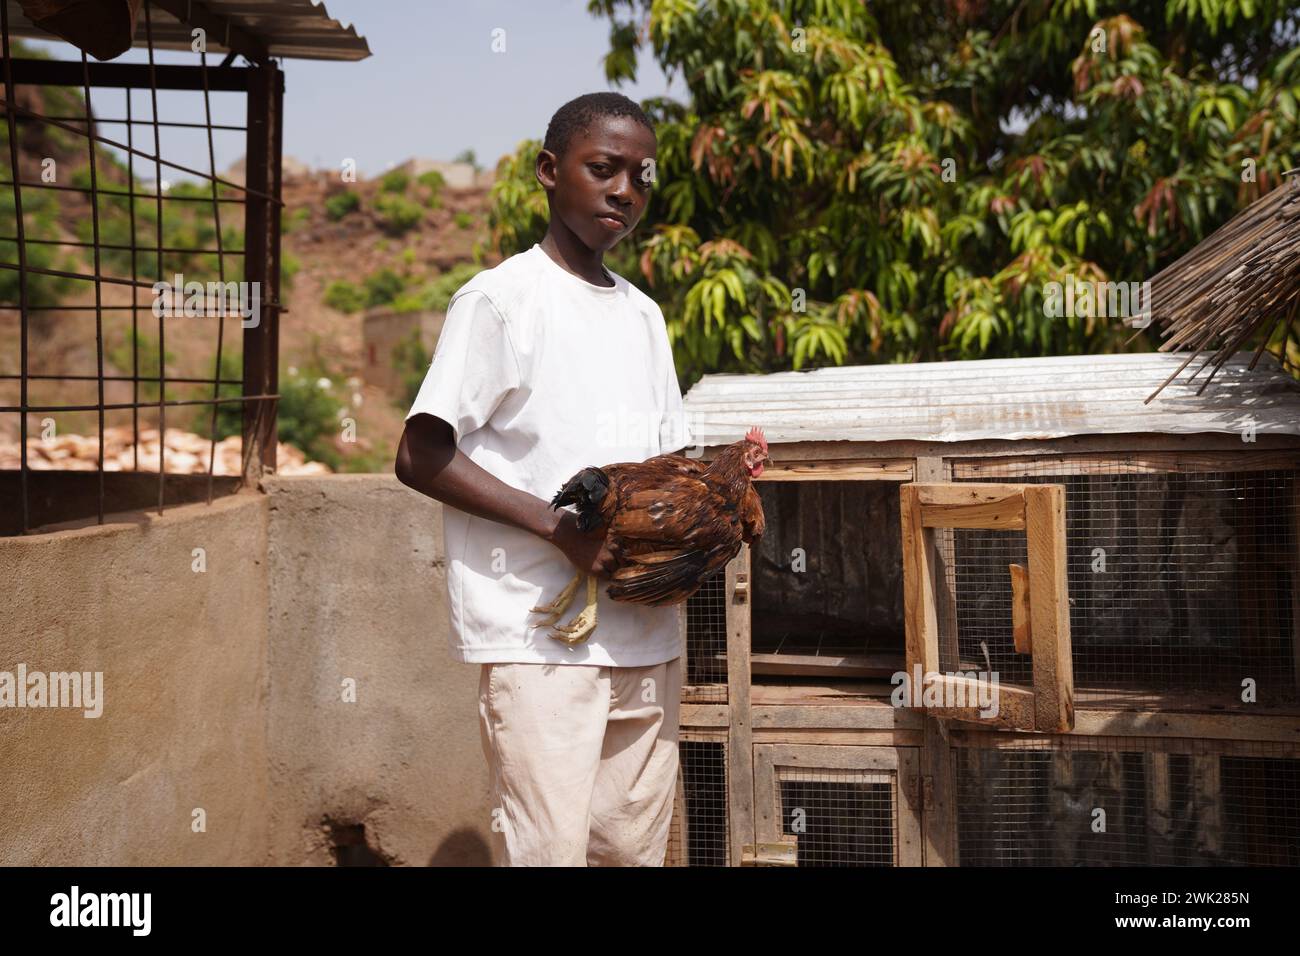 Agriculteur africain dans une ferme avicole prendre soin d'un coq - concept de petite entreprise durable dans les pays en développement Banque D'Images